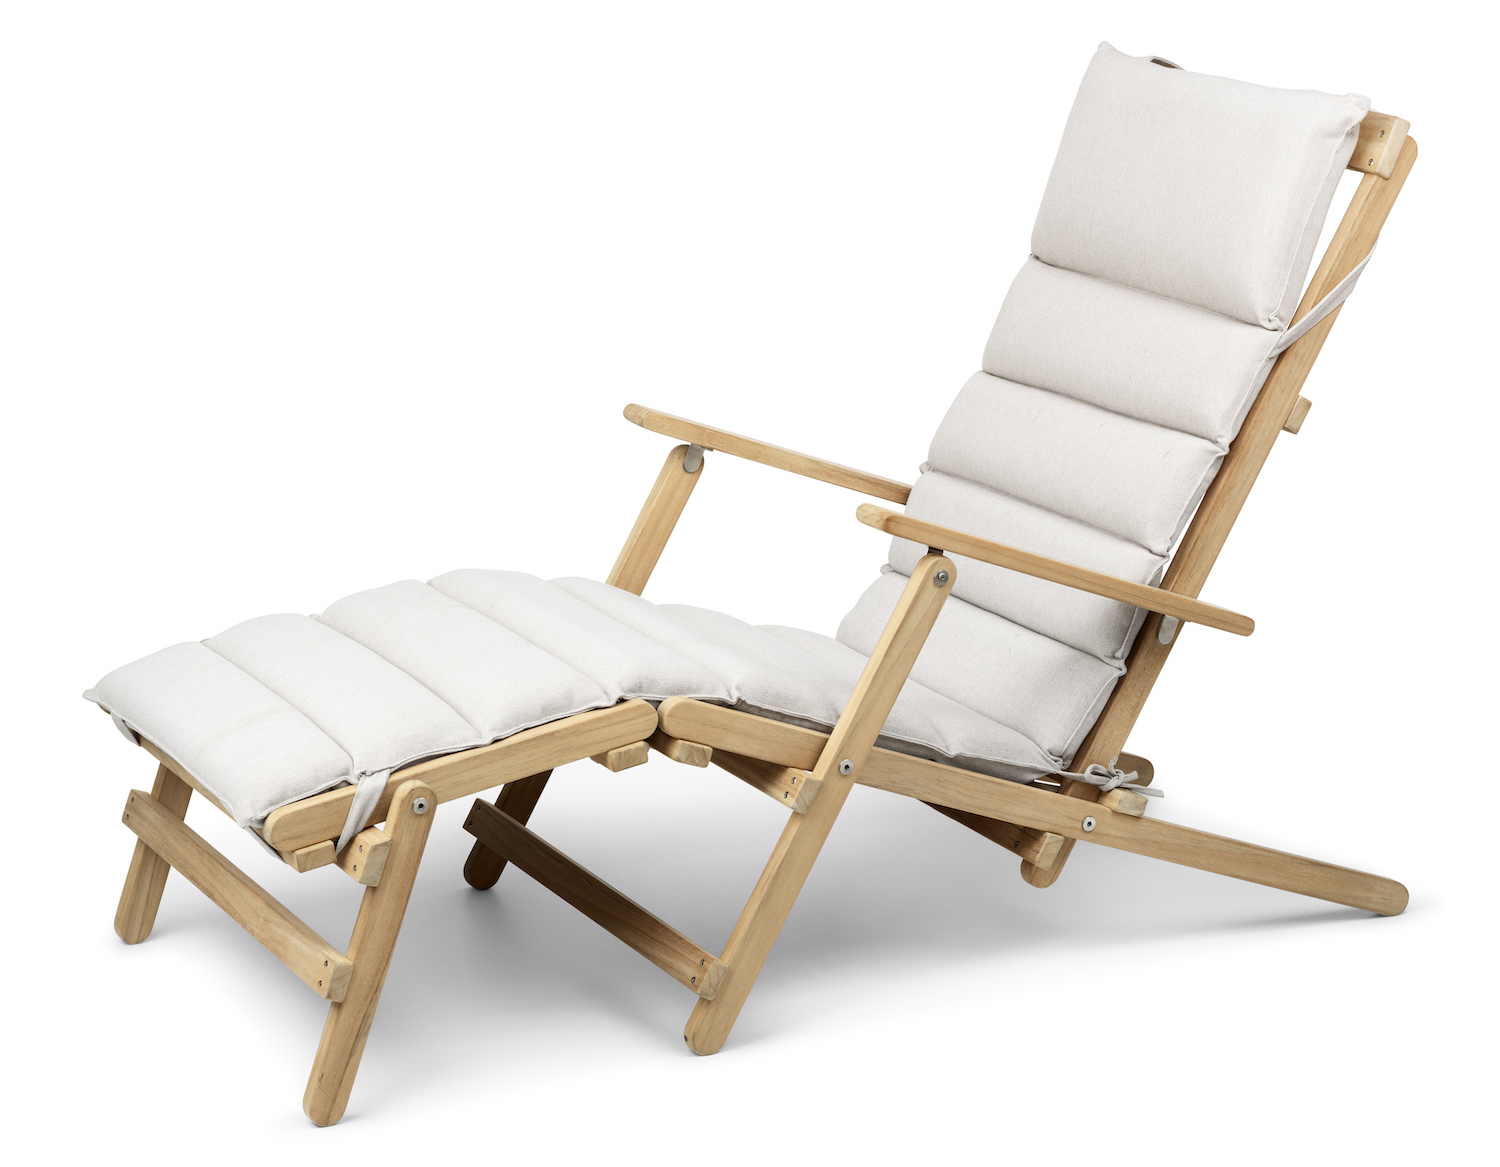 carl hansen & son outdoor furniture wood luxury